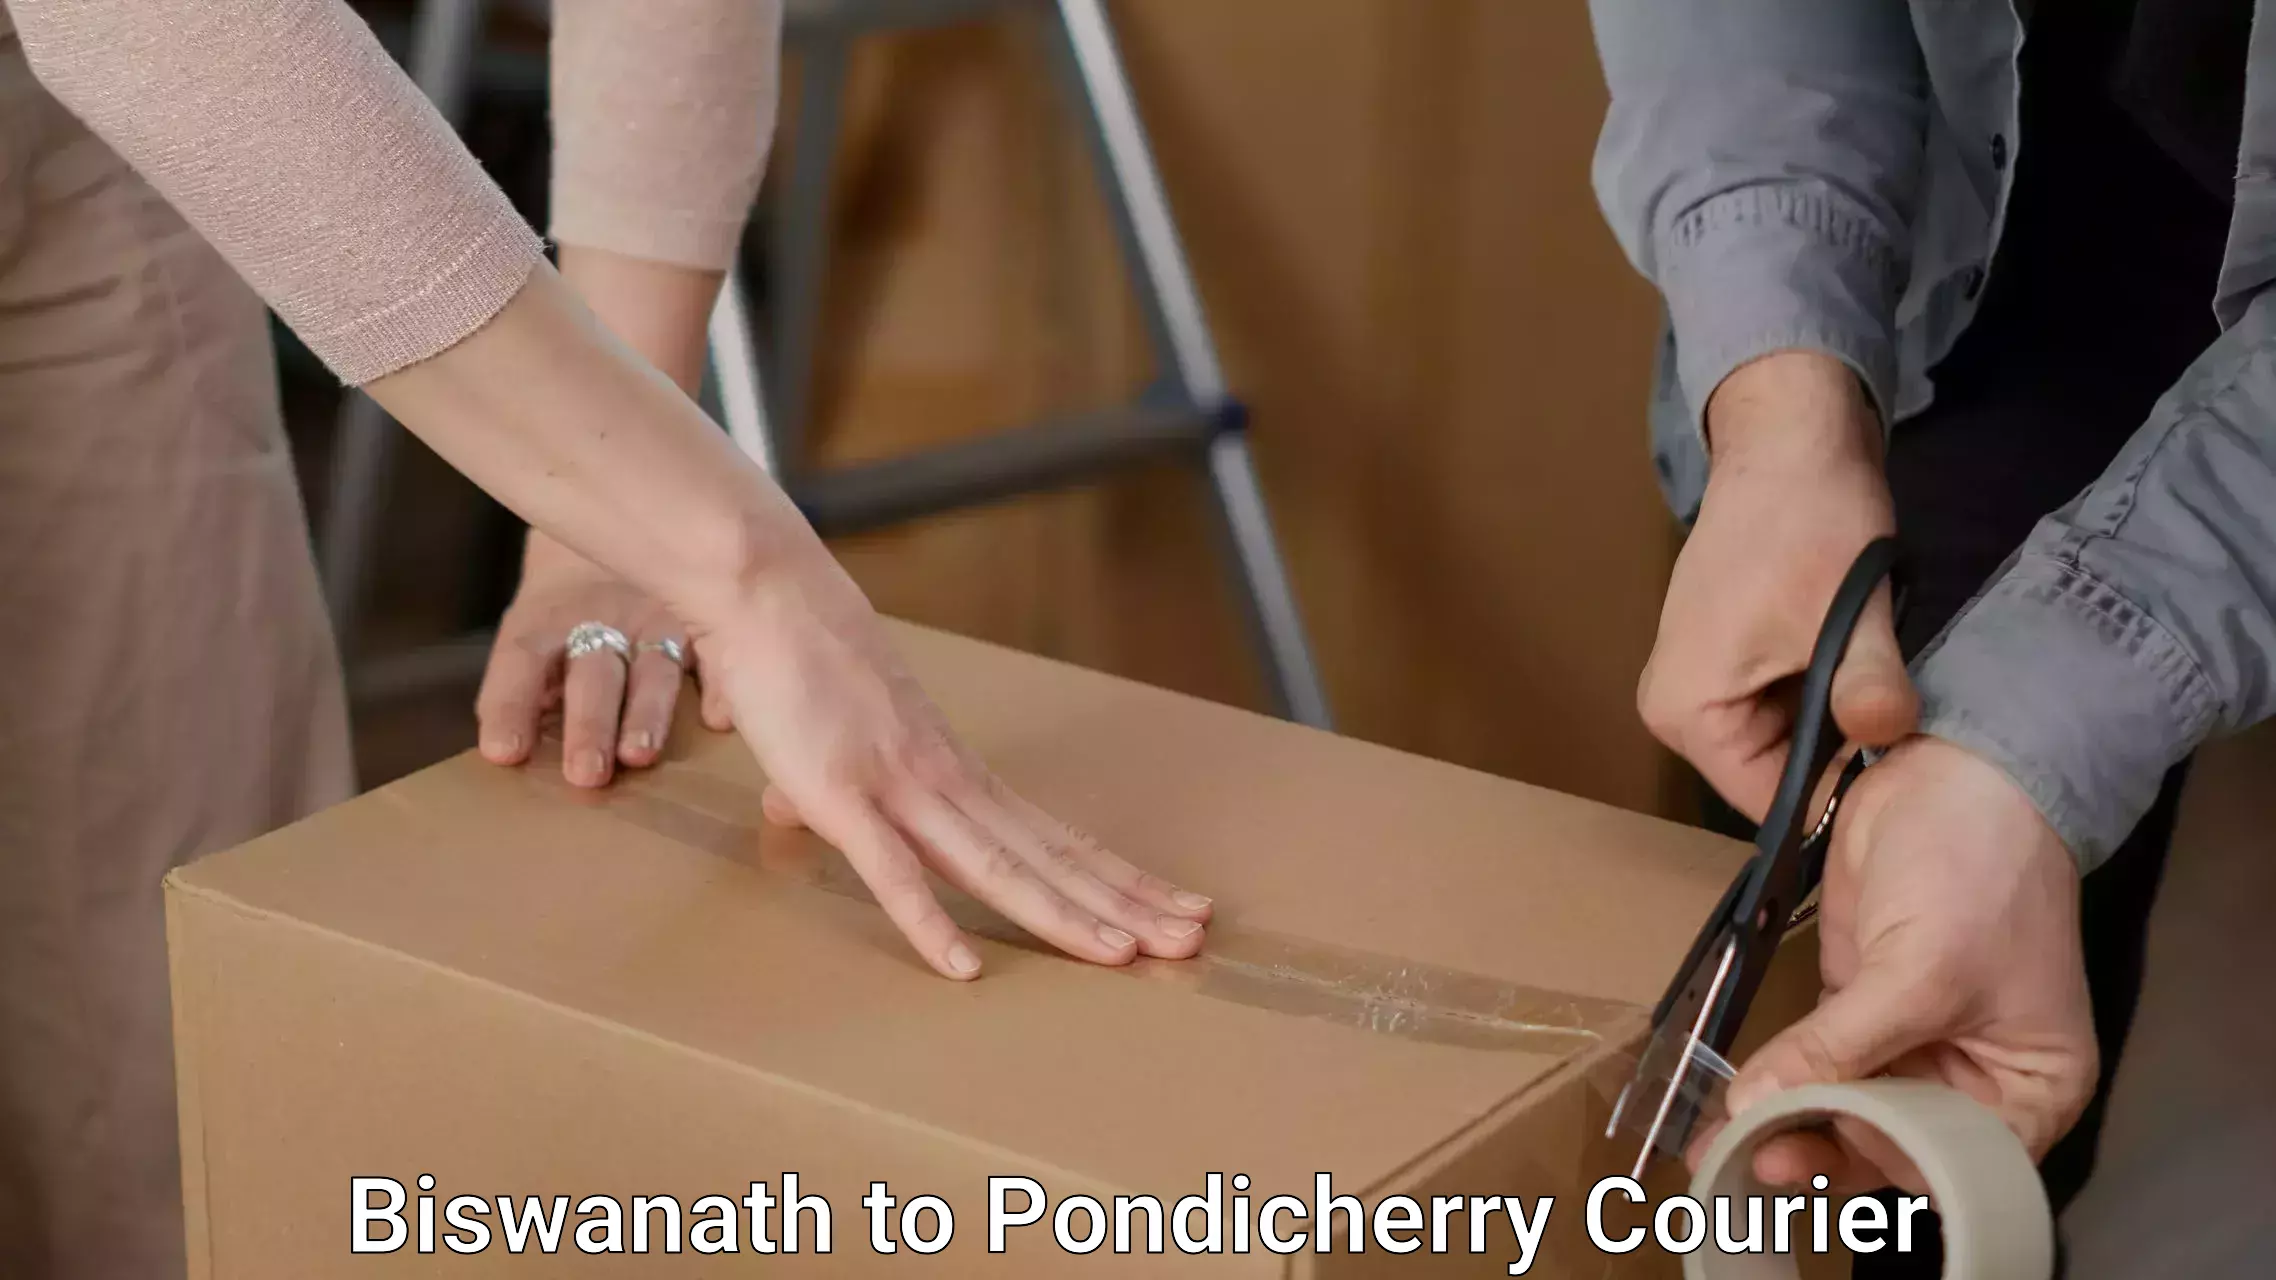 Furniture transport experts Biswanath to Pondicherry